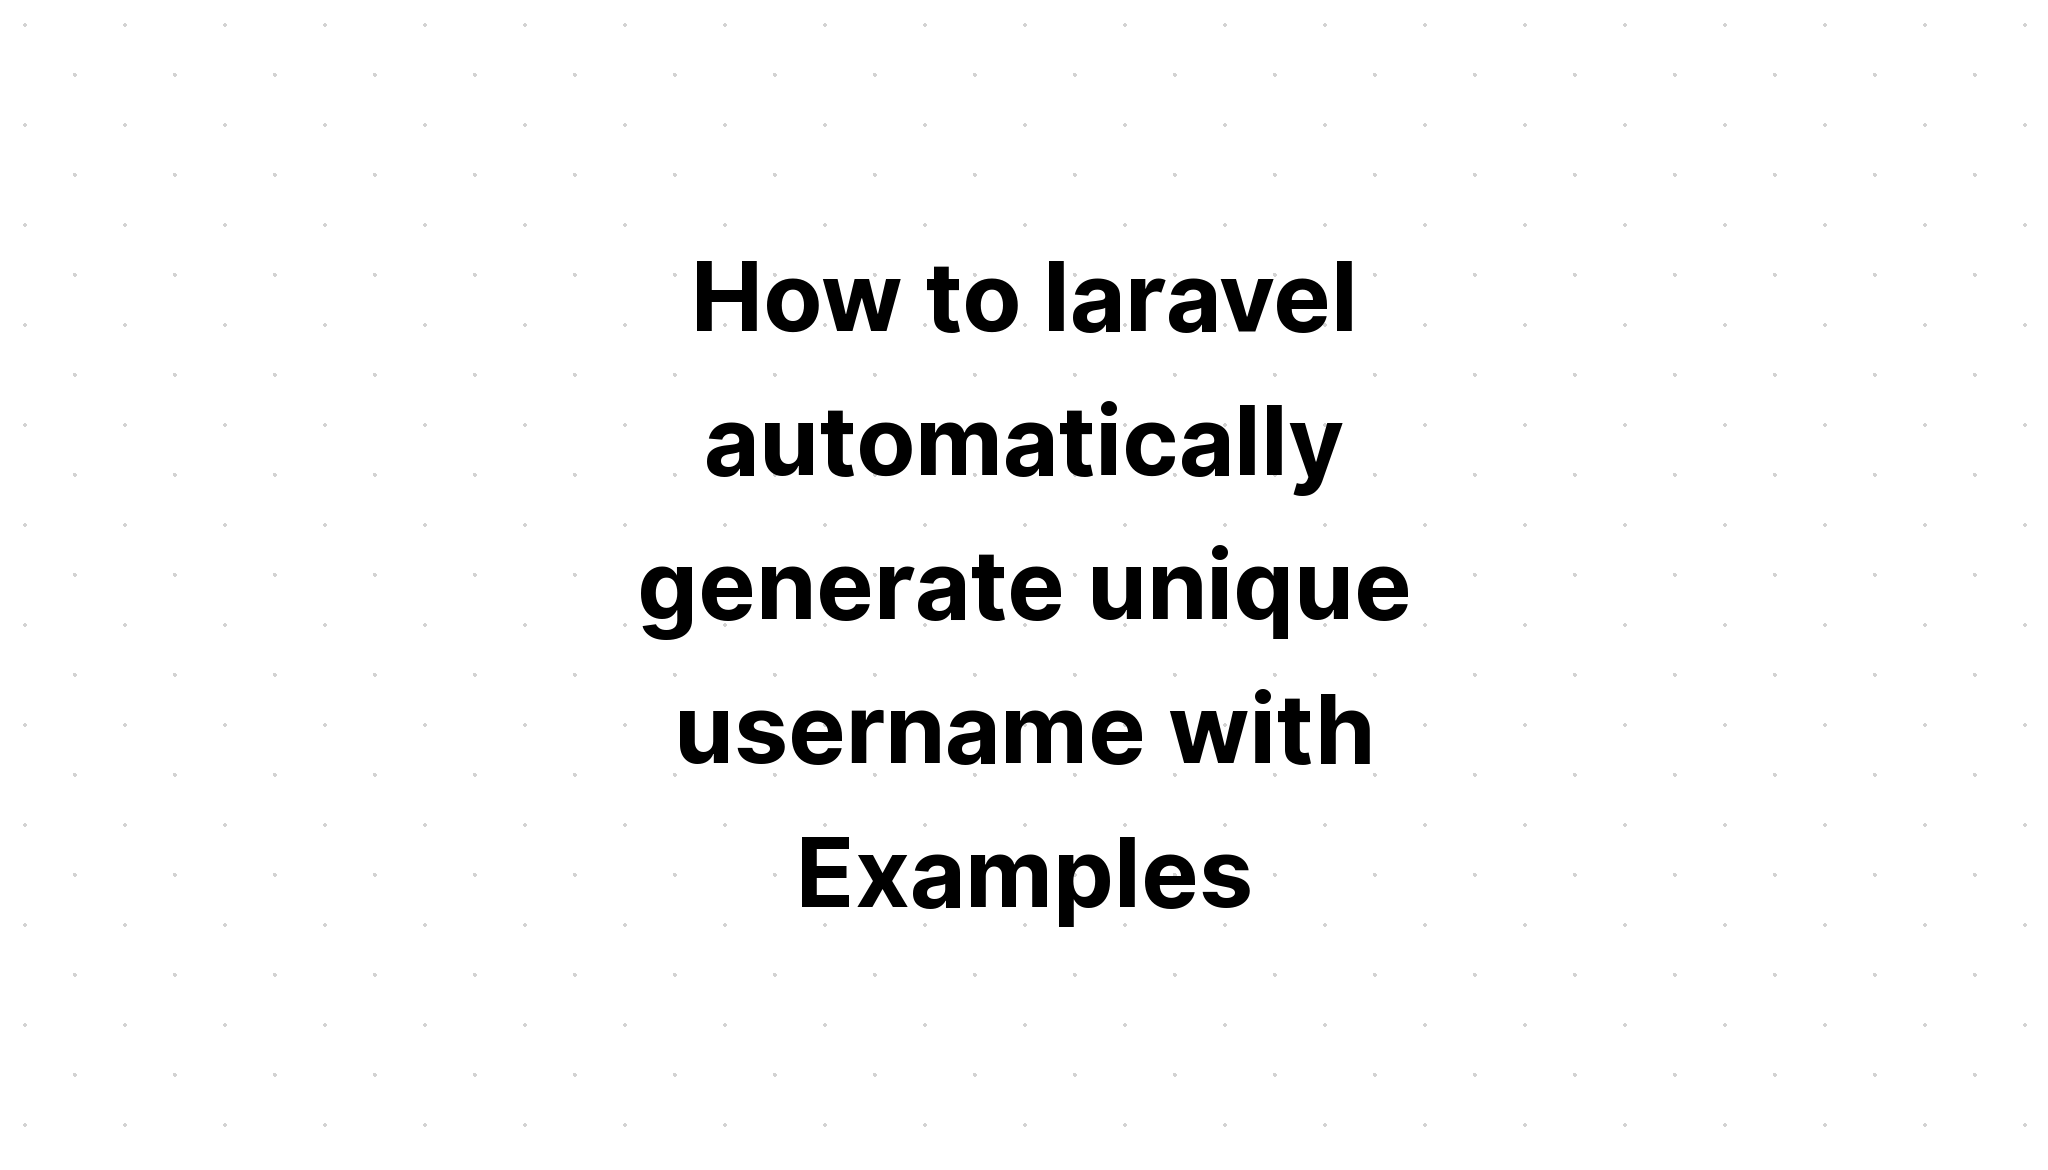 Cách laravel tự động tạo tên người dùng duy nhất với Ví dụ